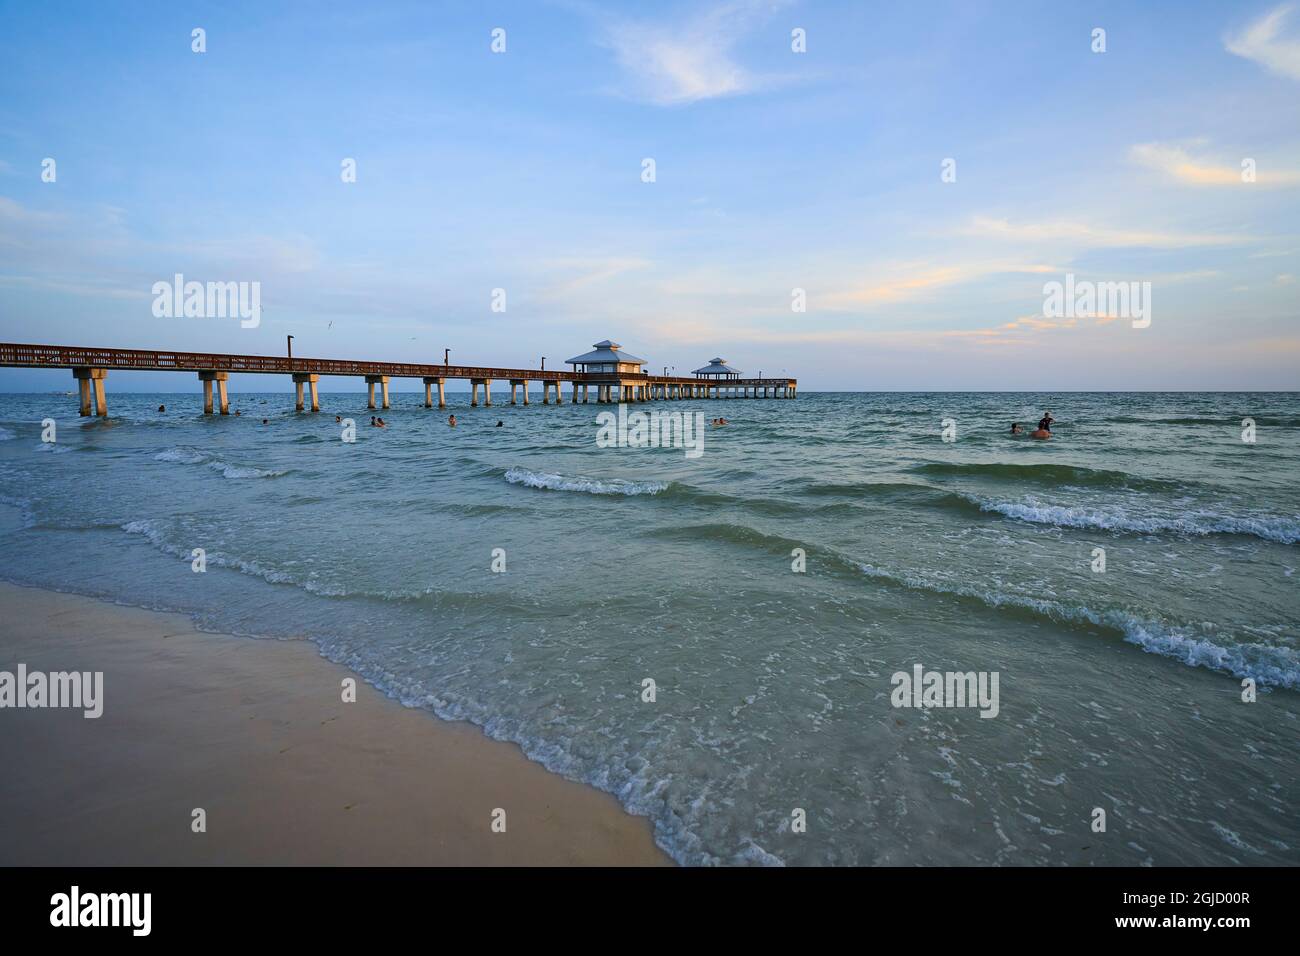 USA, Florida, Fort Myers Beach. Fort Myers Beach Pier bei Sonnenuntergang. Fort Myers Beach liegt auf der Insel Estero und ist ein wichtiges Touristenziel in Florida. Stockfoto